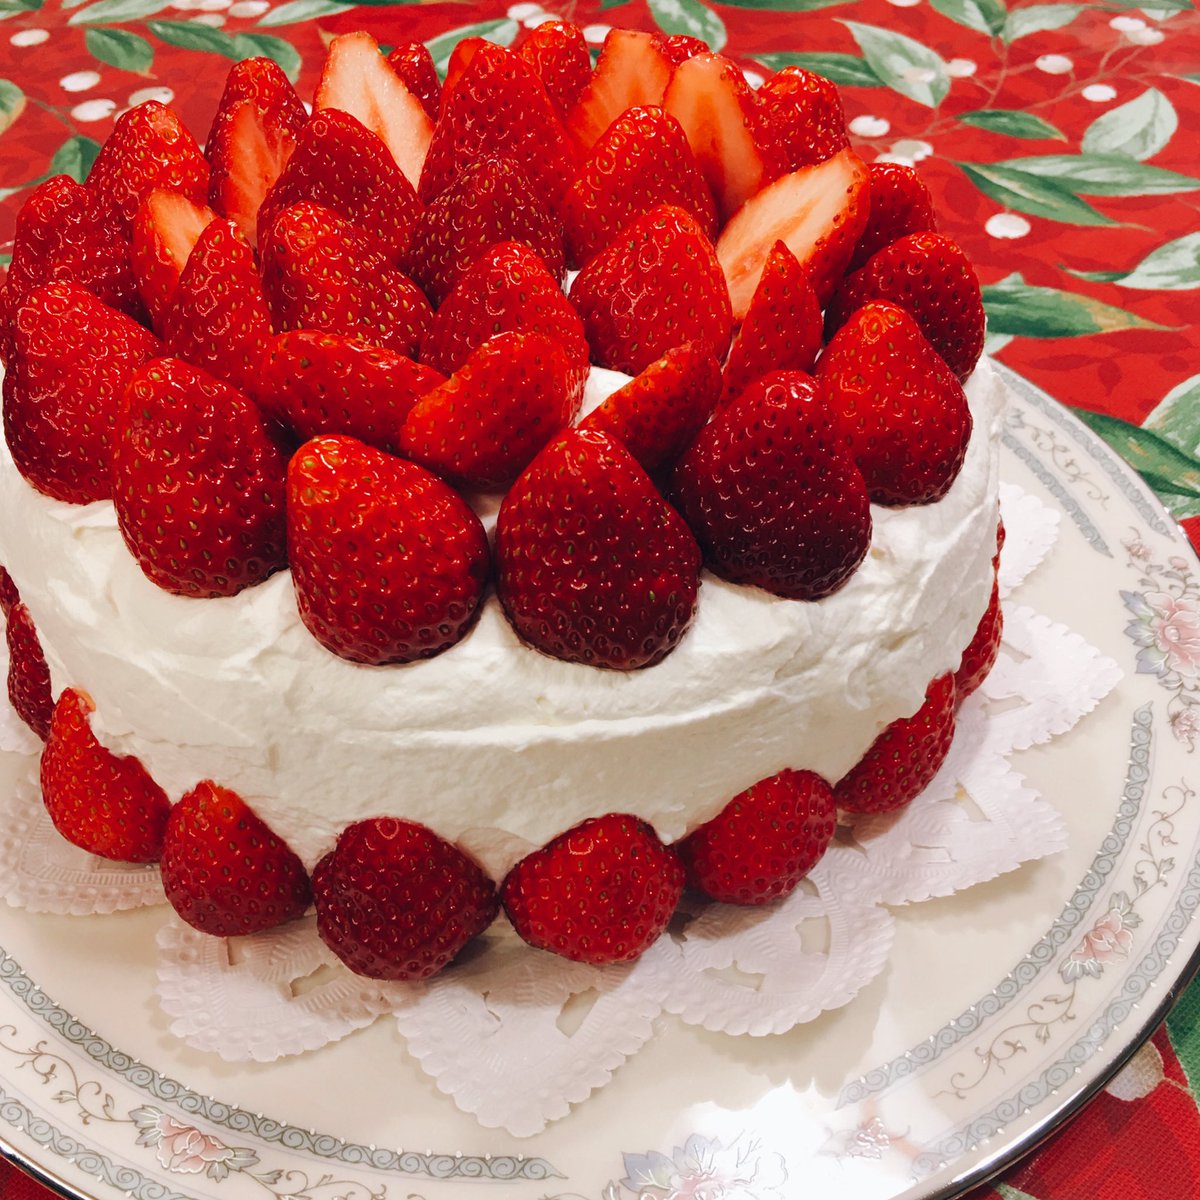 いちご沢山のショートケーキ作ったよ🍰🍓🍰🍓🍰🍓🍰
甘酸っぱくて美味し〜い😋♥️🍓

#food #fresh #strawberry #shortcake #cake #madefromscratch #strawberrylovers